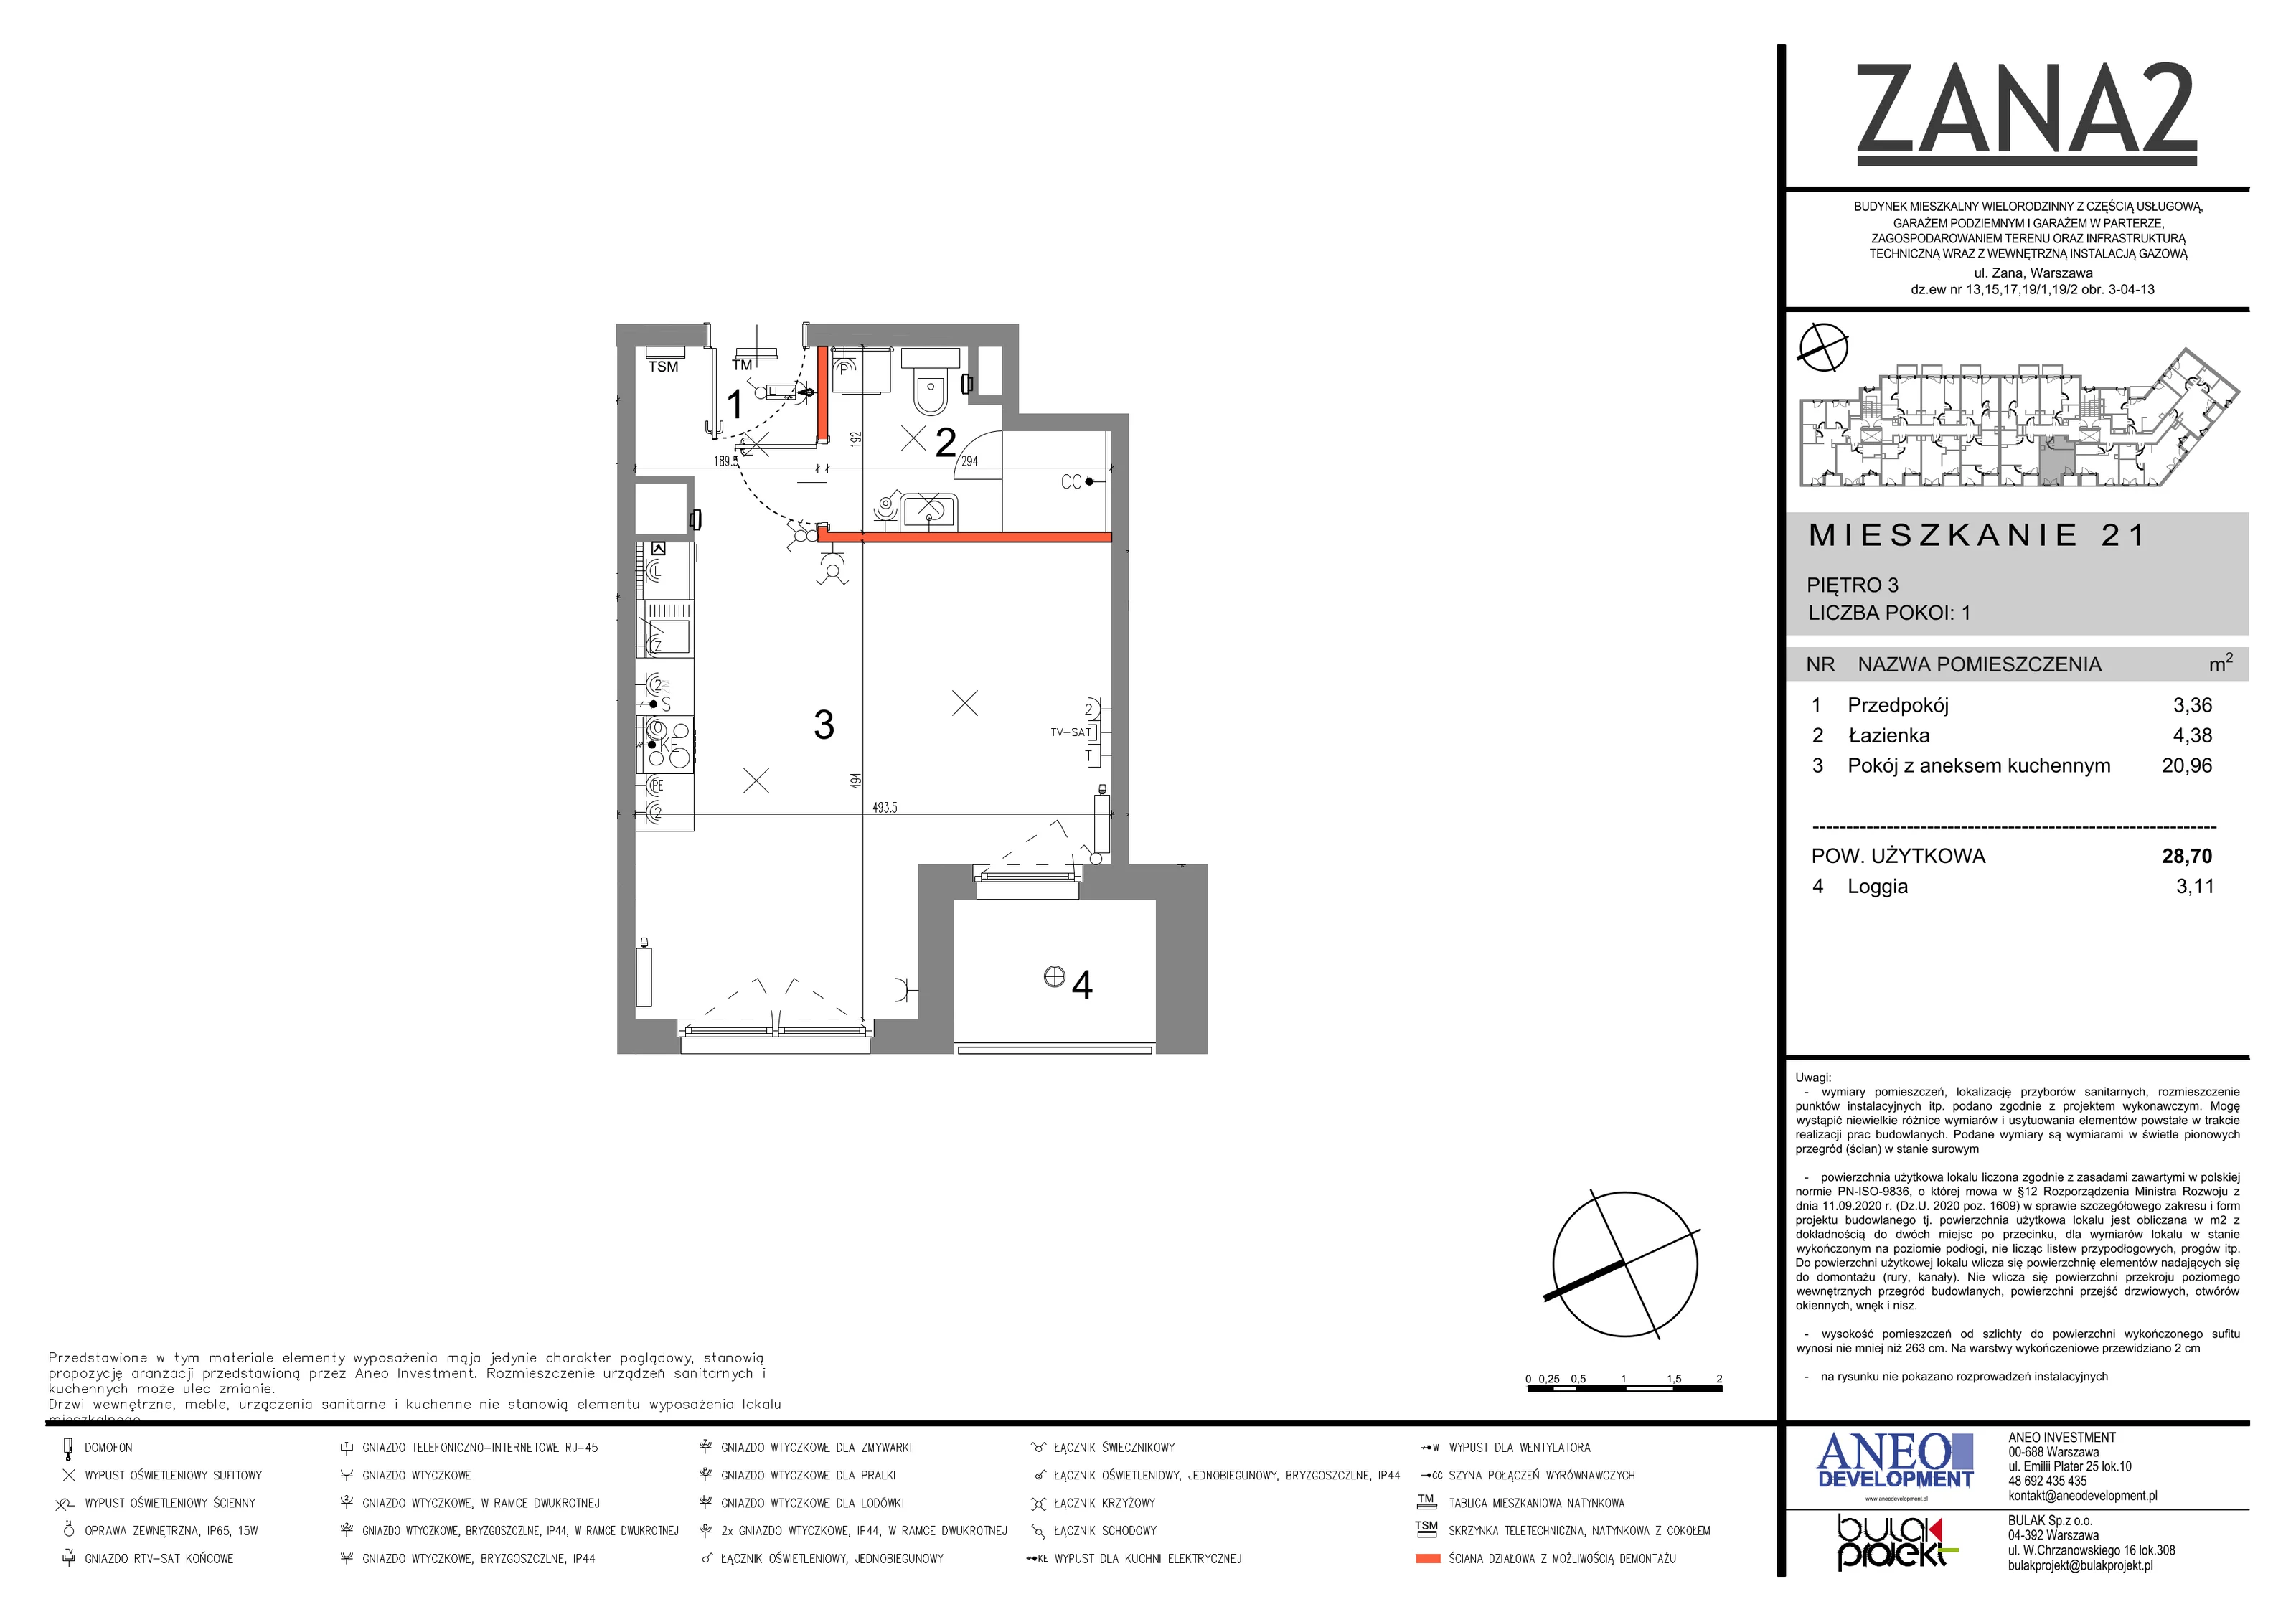 Mieszkanie 28,70 m², piętro 3, oferta nr 21, Zana 2, Warszawa, Praga Południe, Gocławek, ul. Tomasza Zana